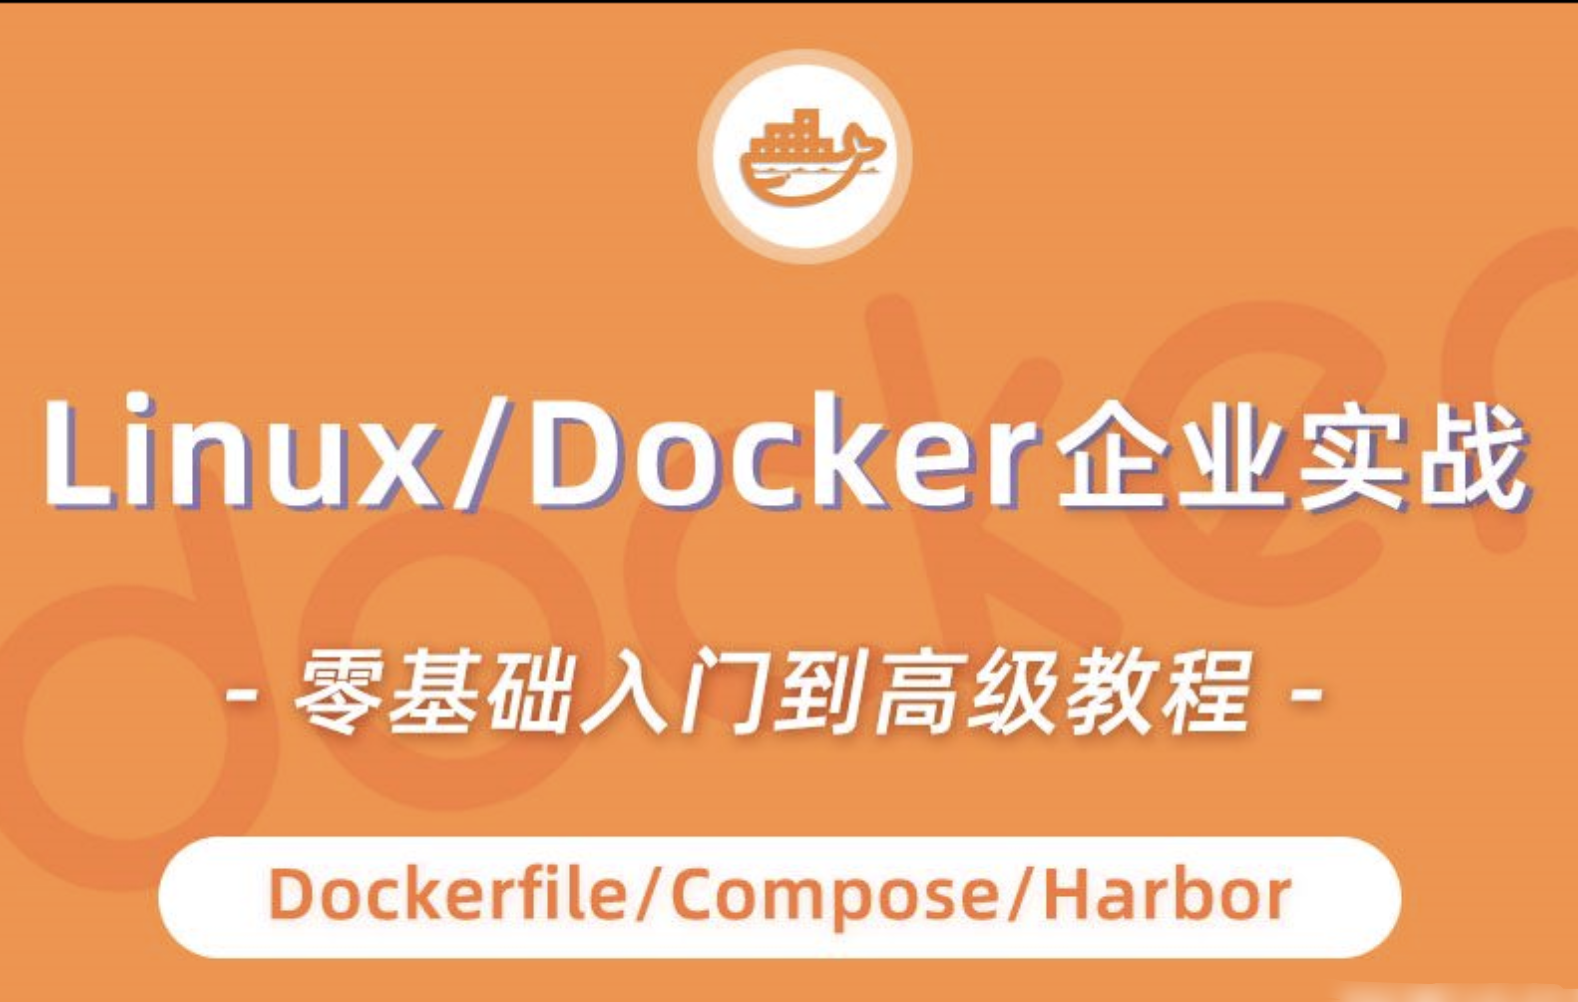 小滴 Docker实战视频教程入门到高级dockerfile | 完结